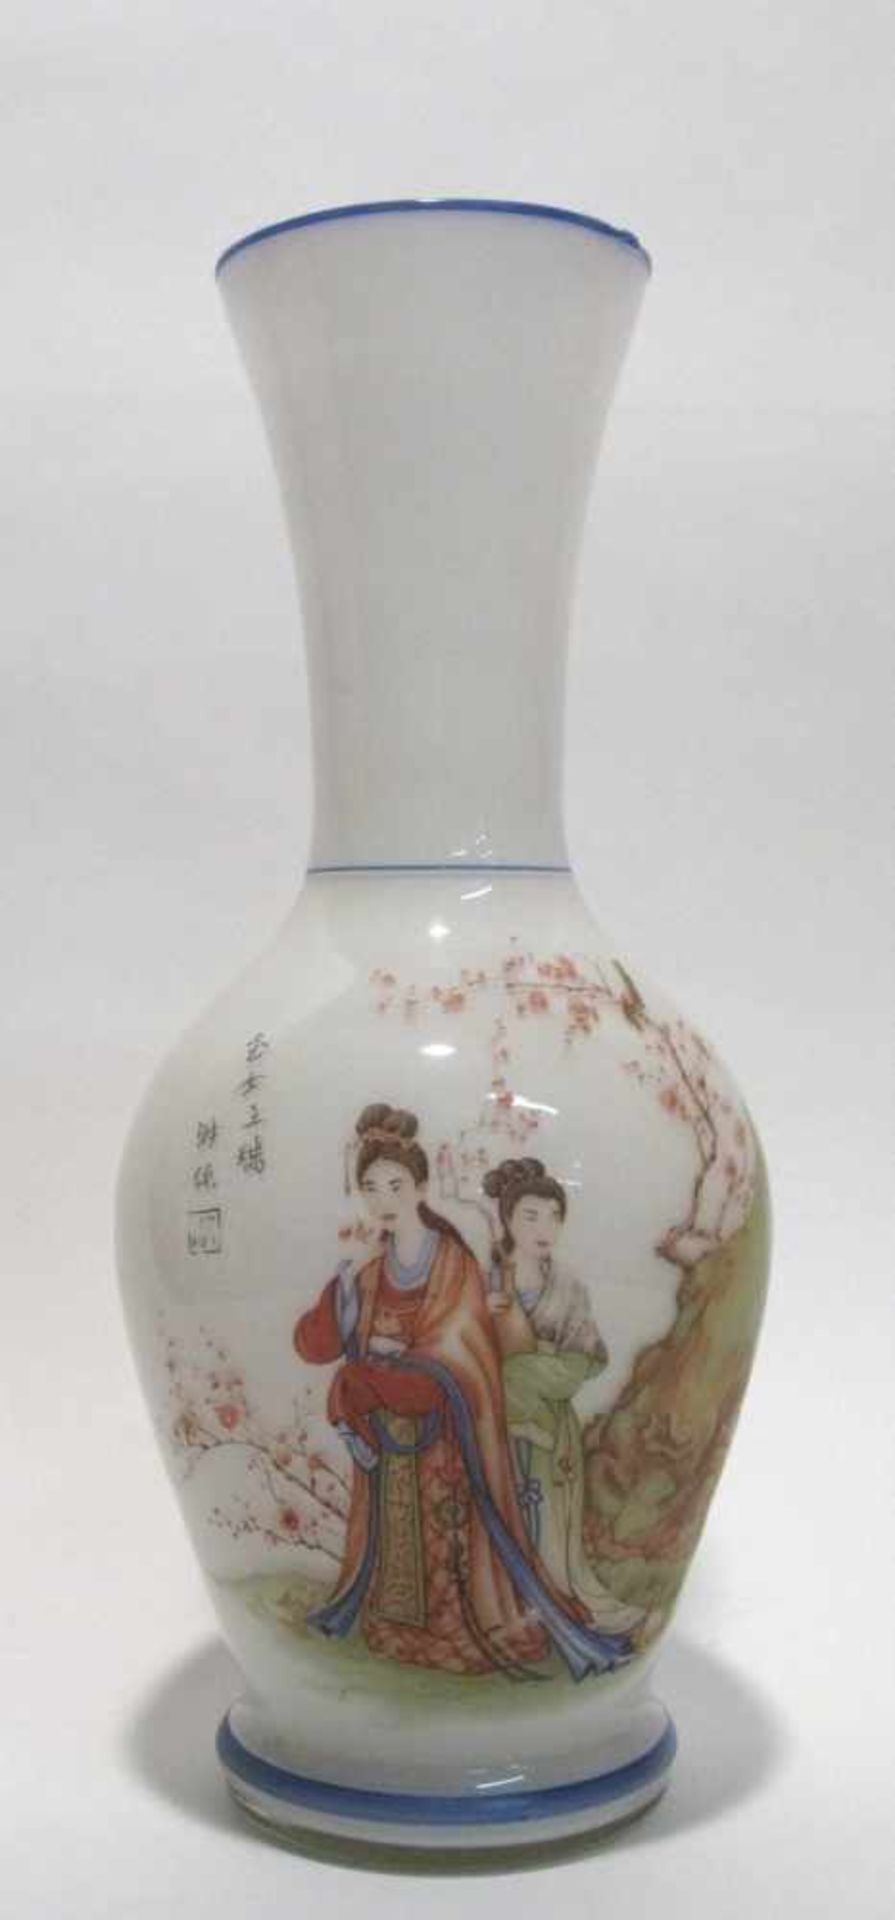 Vase Farbloses Glas, weiß unterfangen. Balusterform mit asiatischem Figuren- und Blumendekor sowie